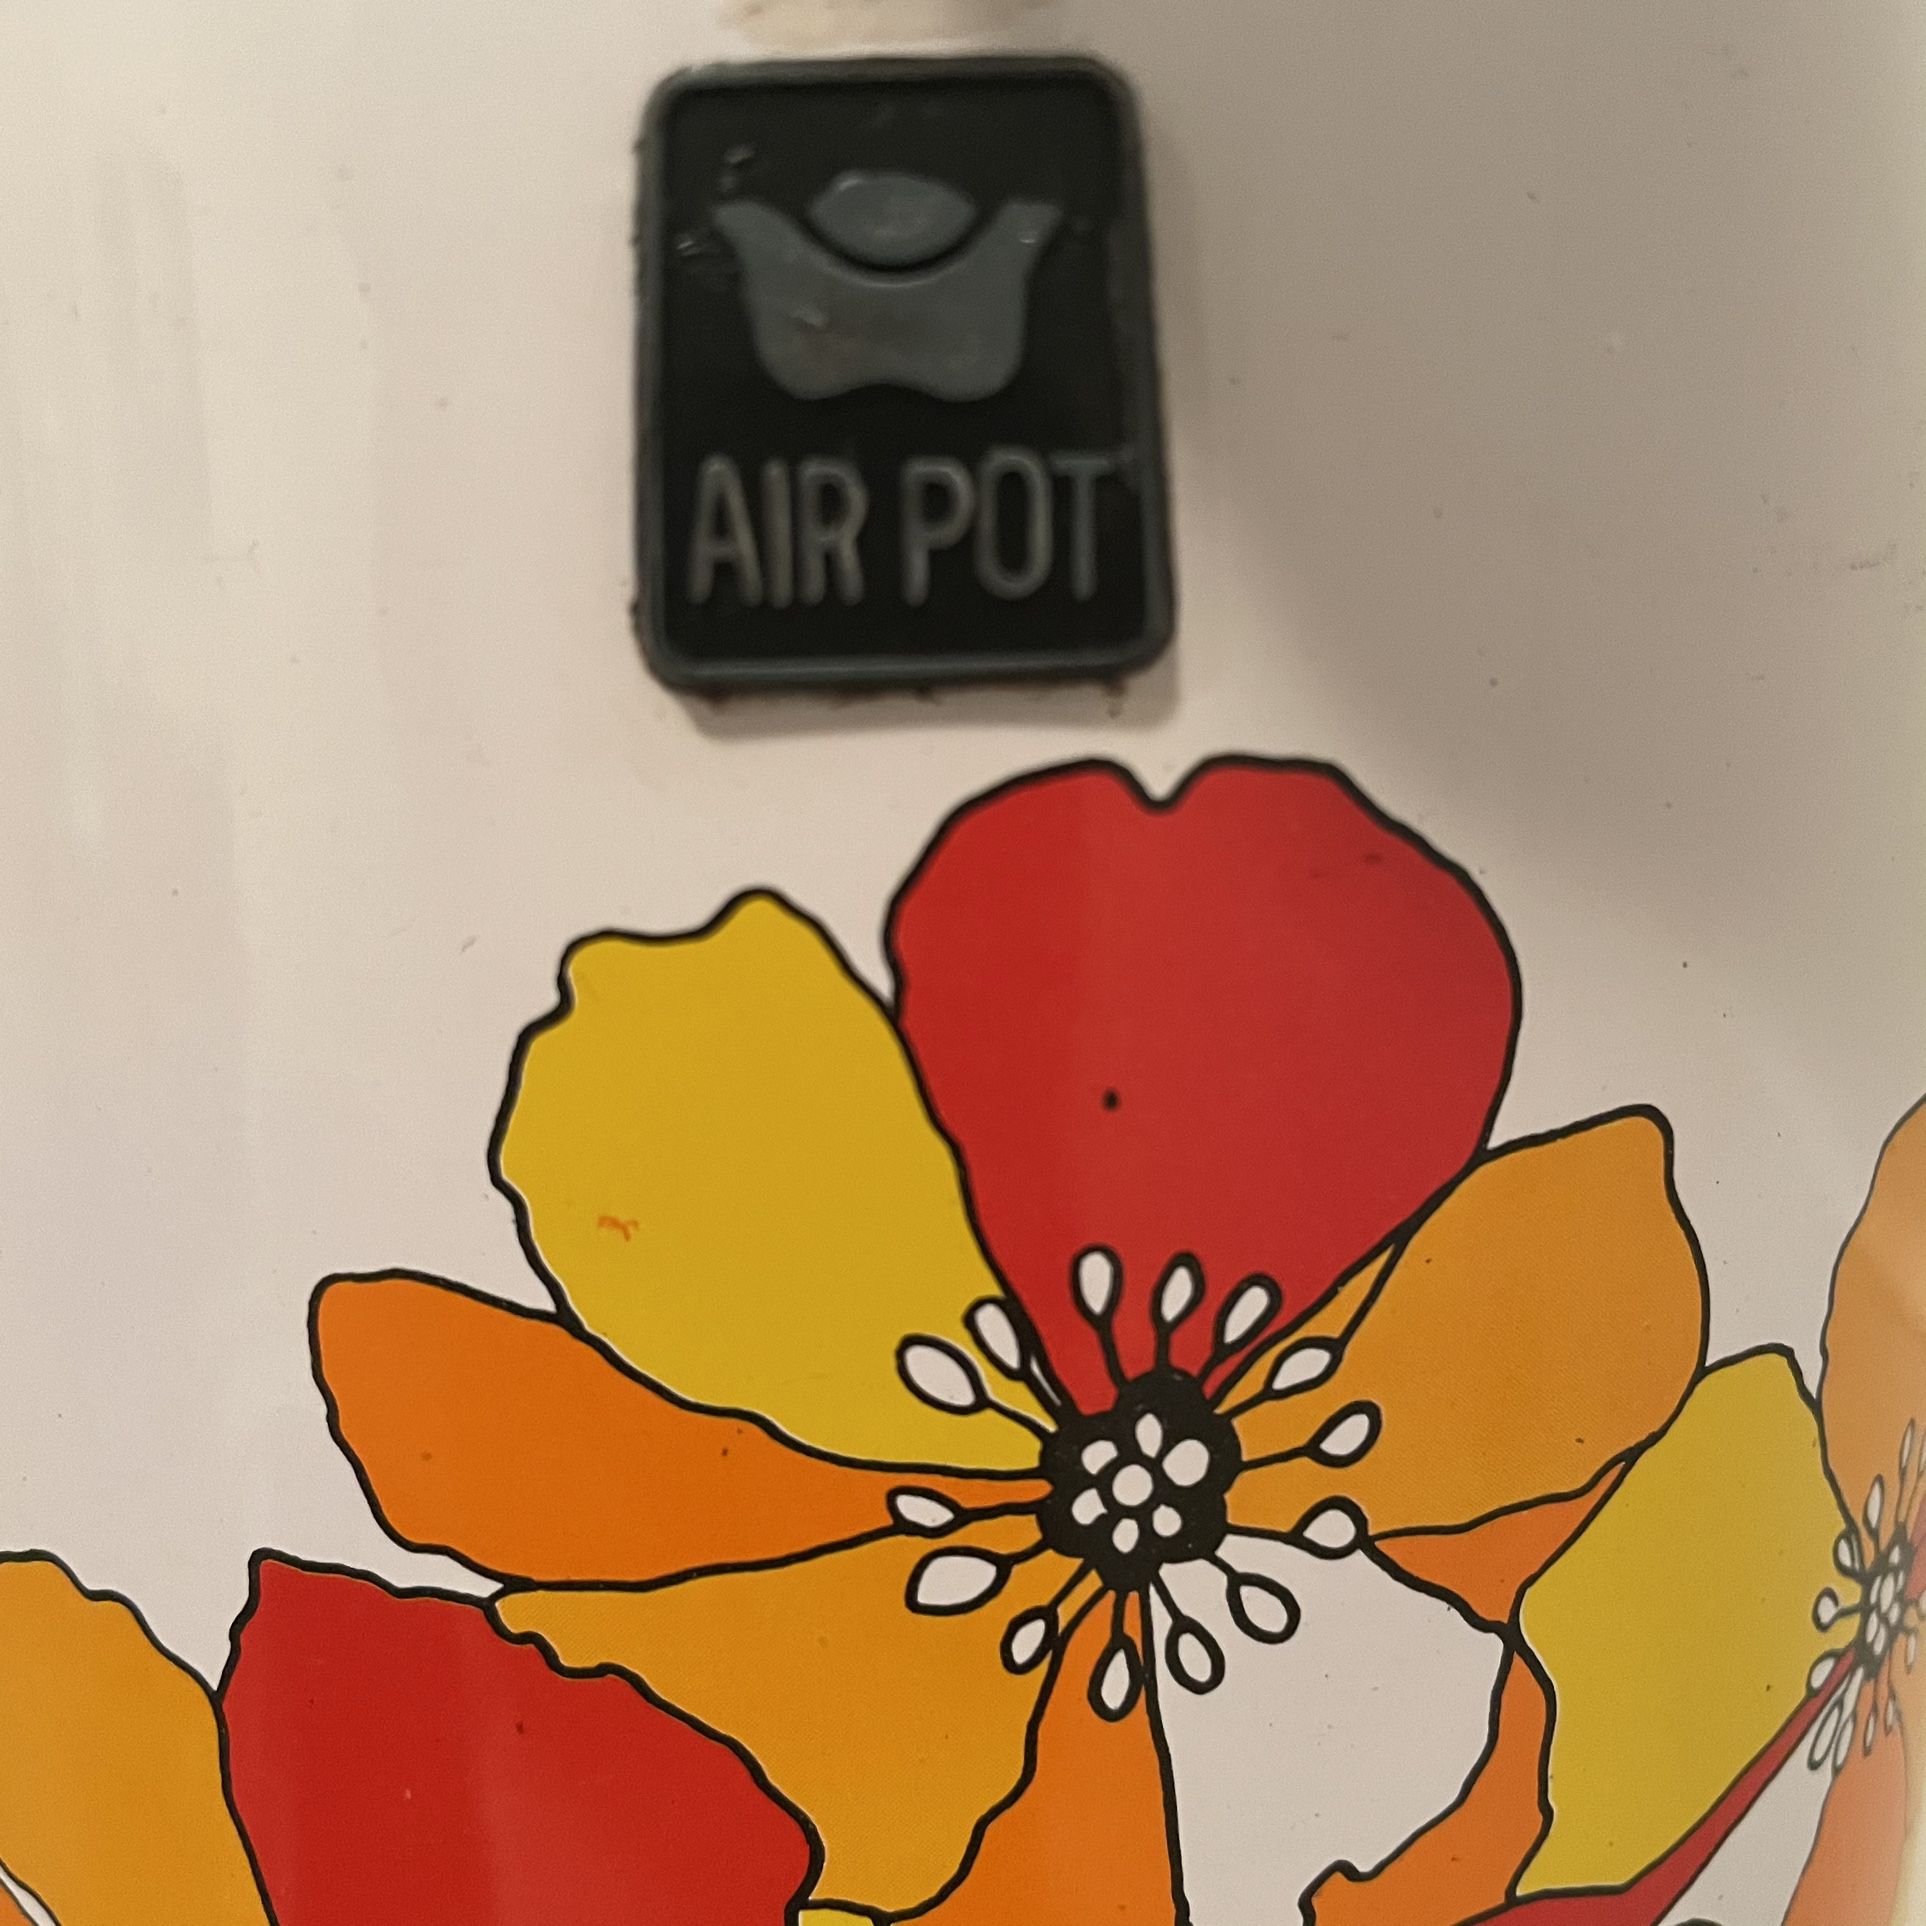 VTG King Air Pot Red Floral Rose Coffee Hot Beverage Dispenser